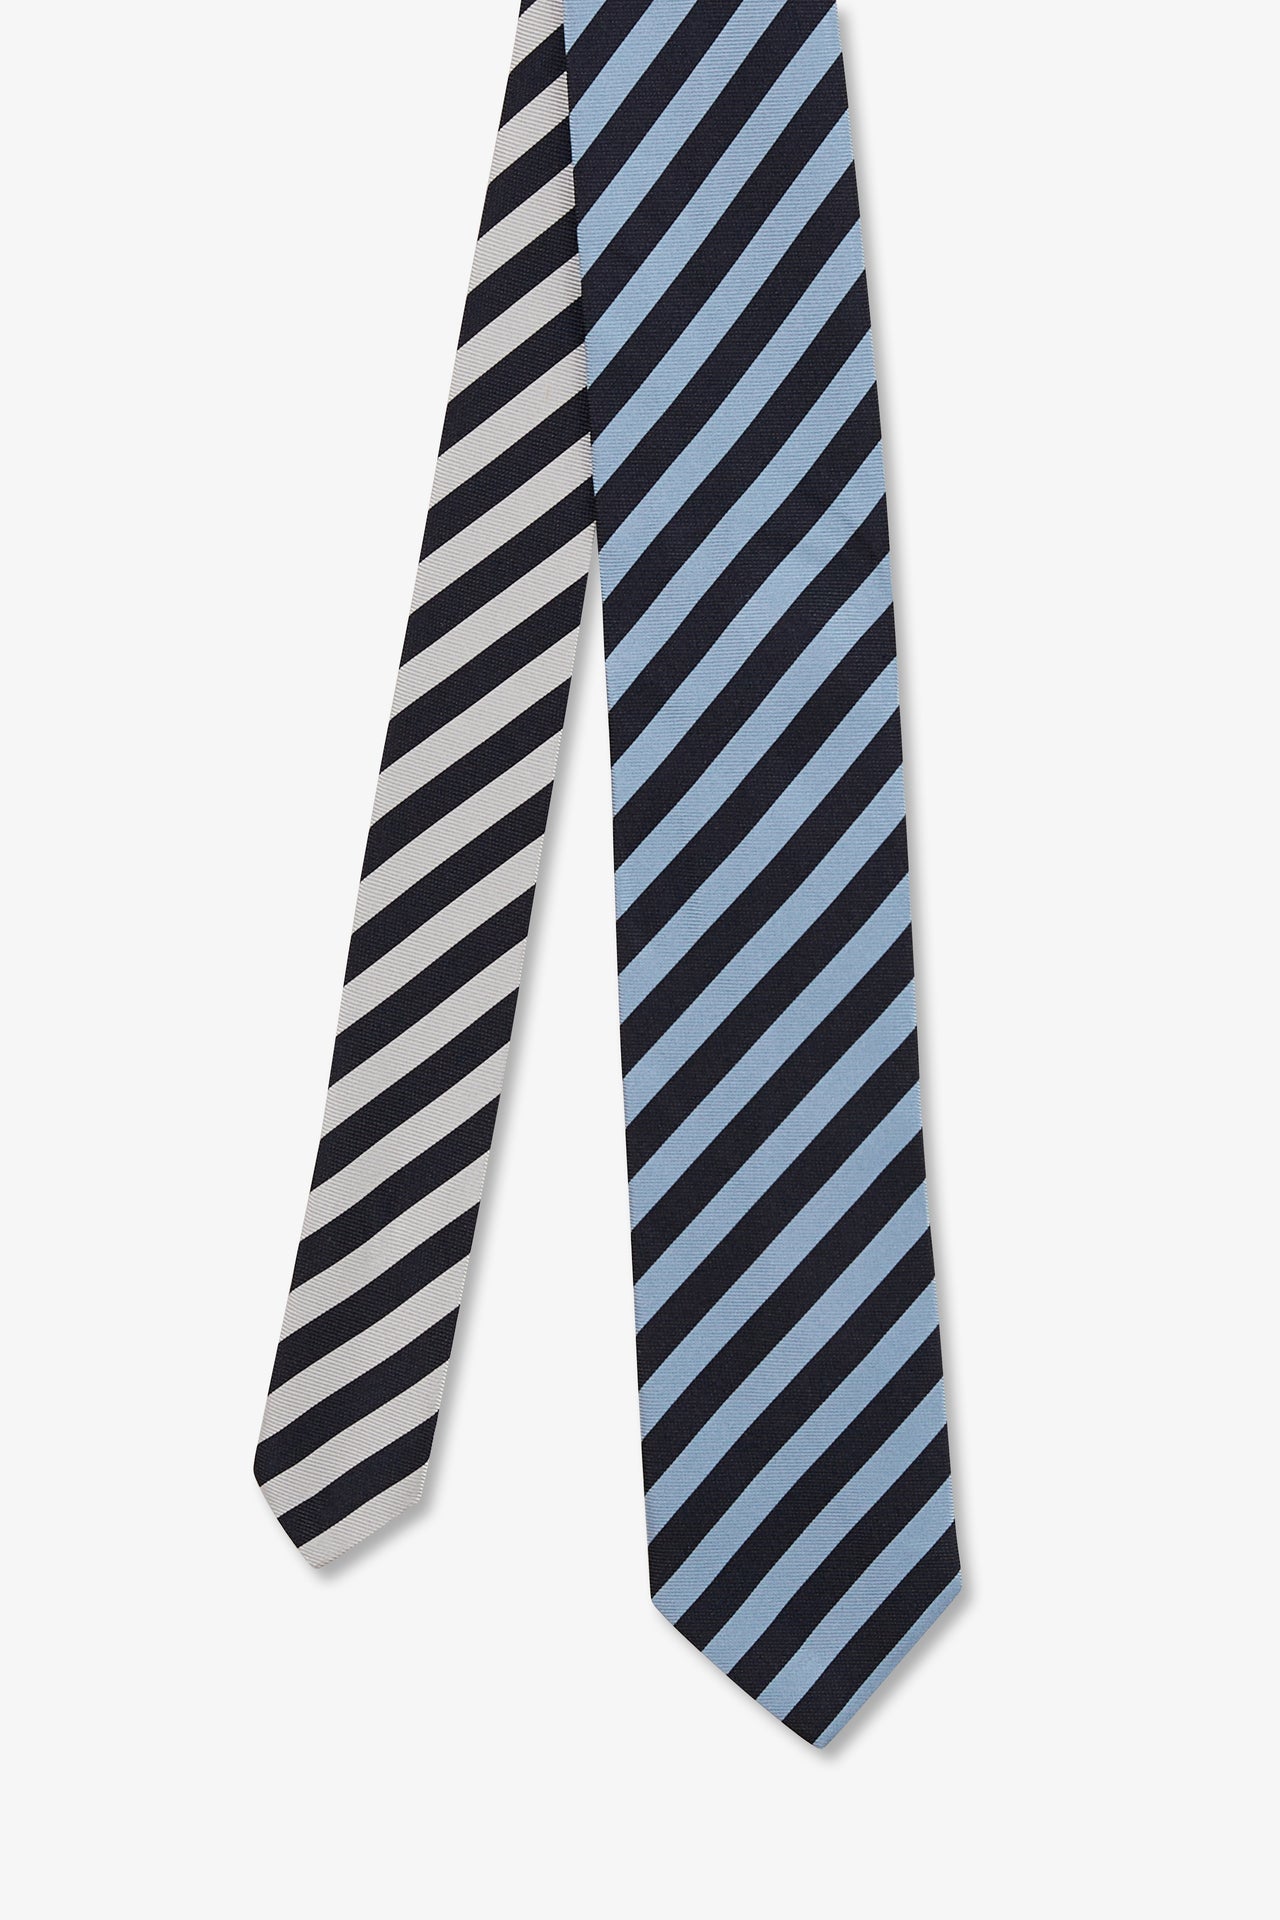 Cravate bleue à rayures tricolores - Image 1